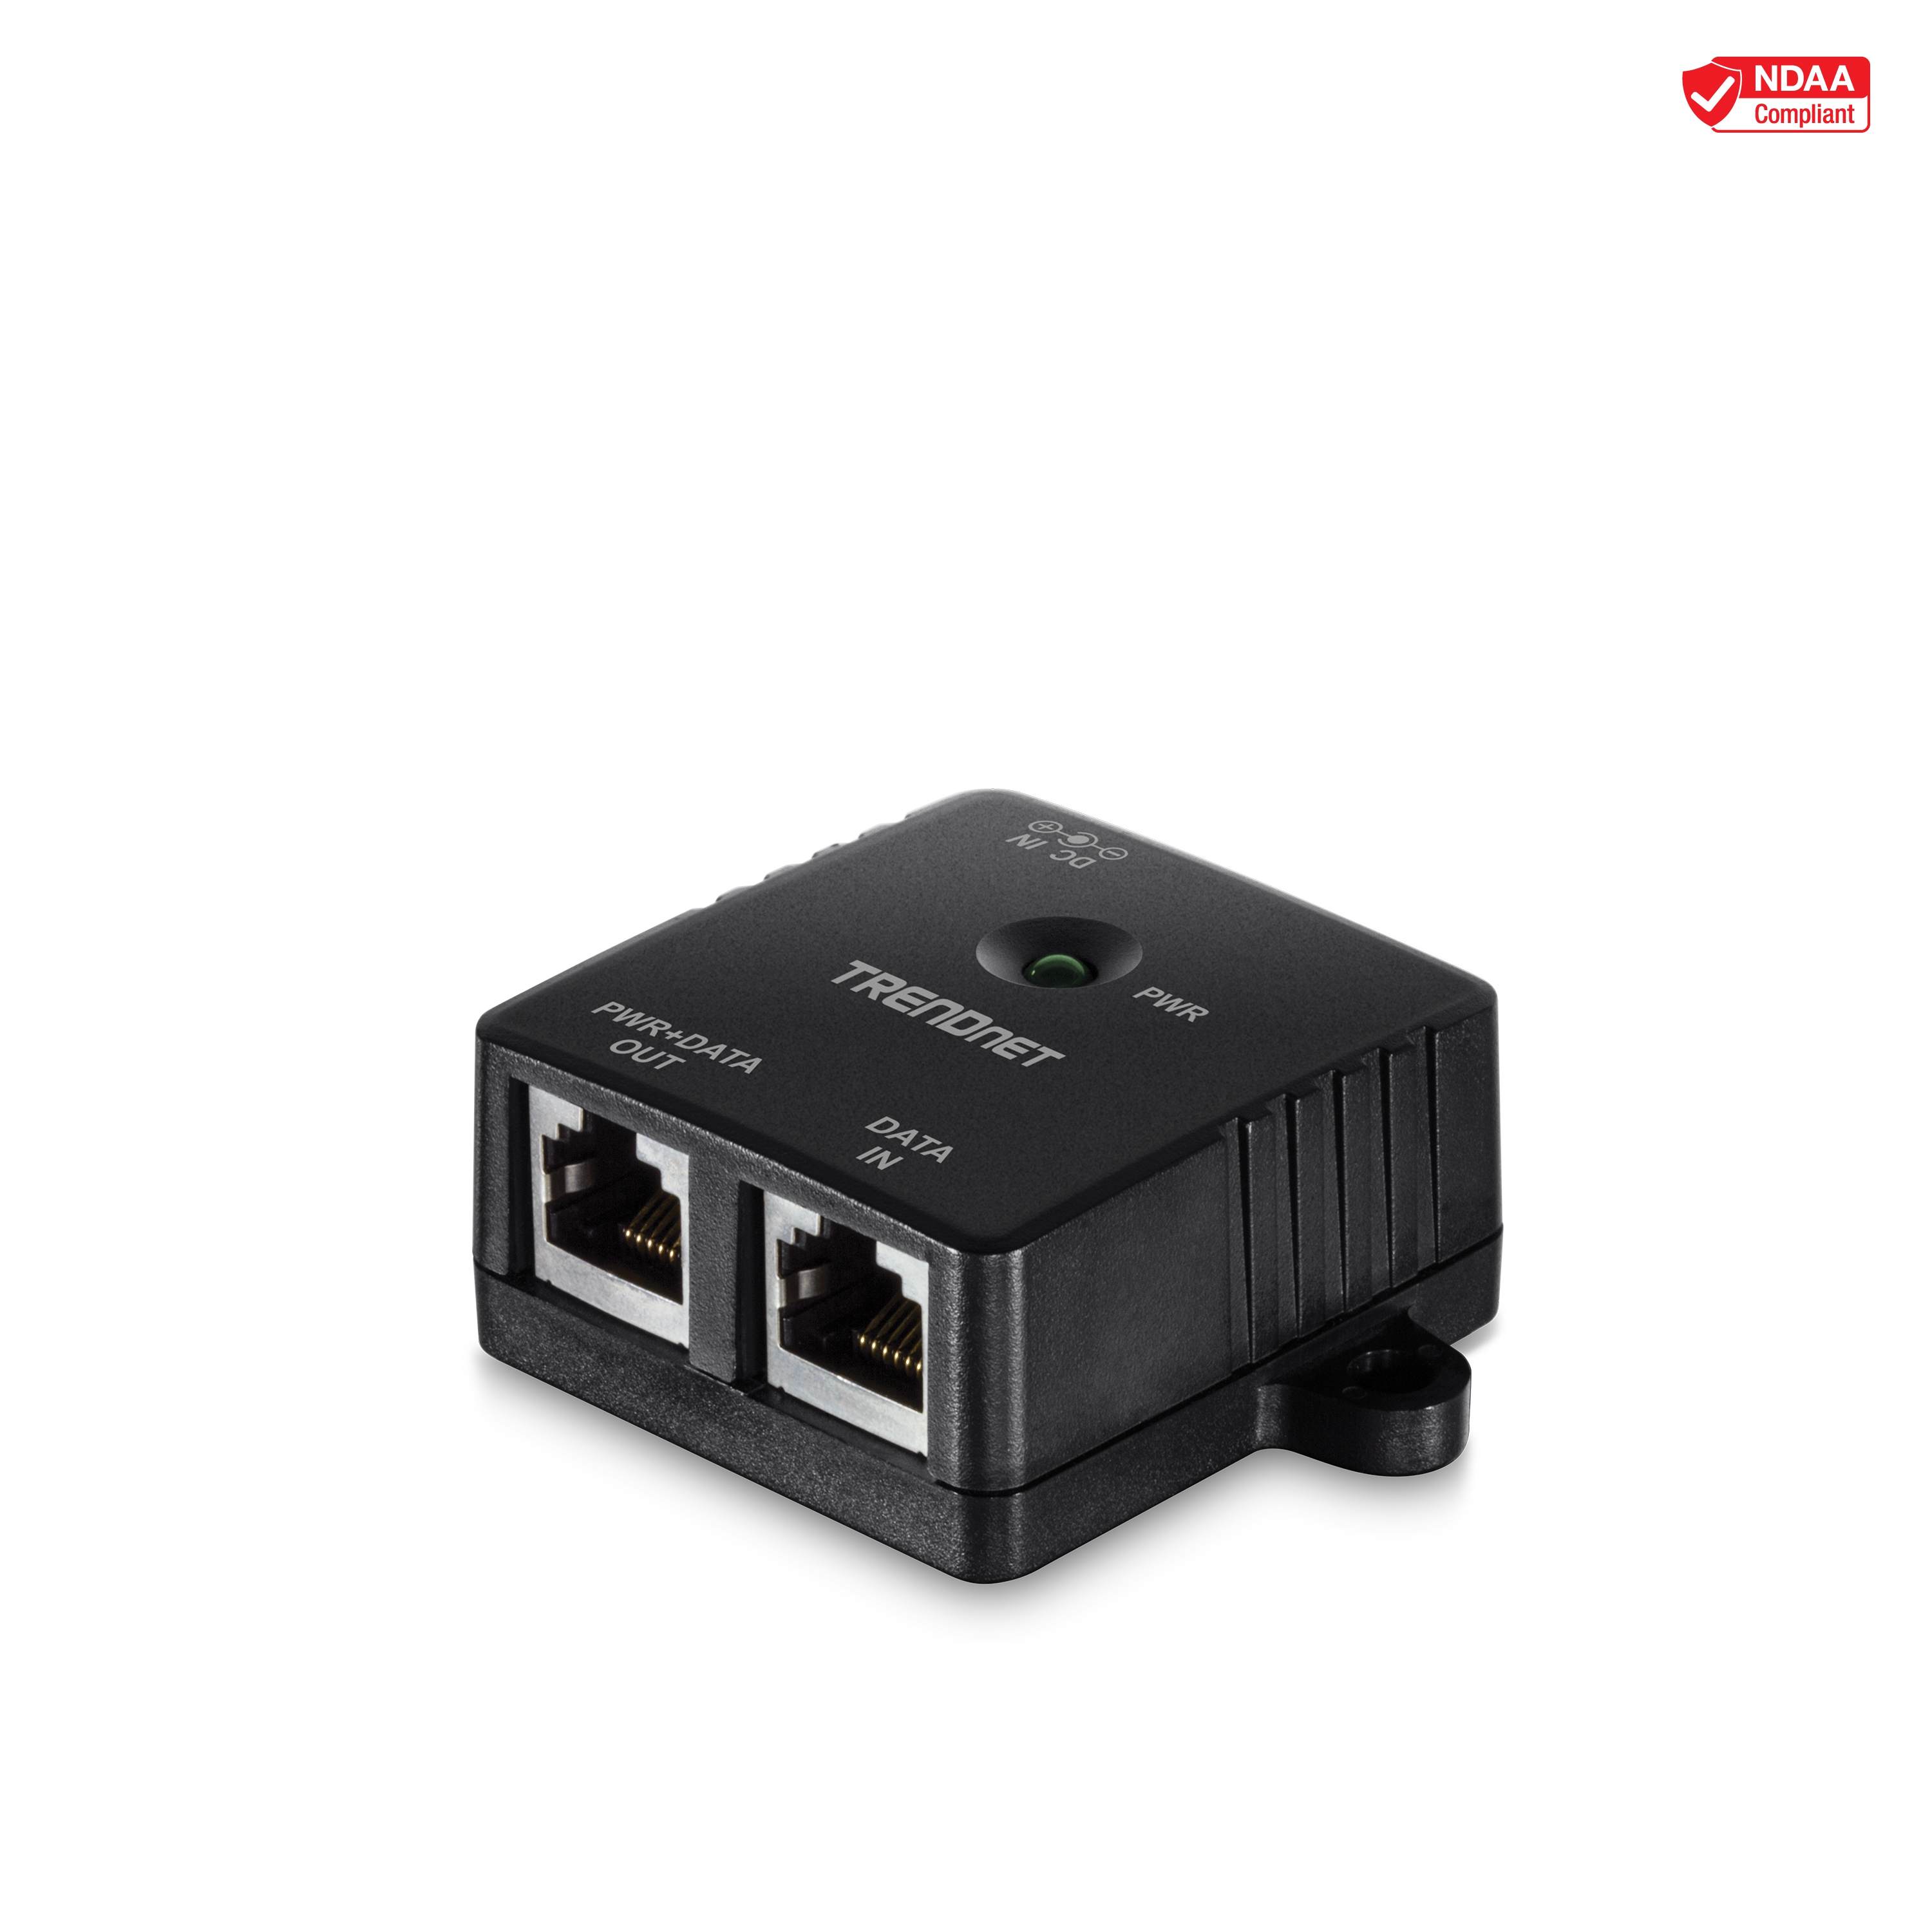 TRENDnet TPE-113GI, Gigabit Power over Ethernet (PoE) Injector - image 1 of 8